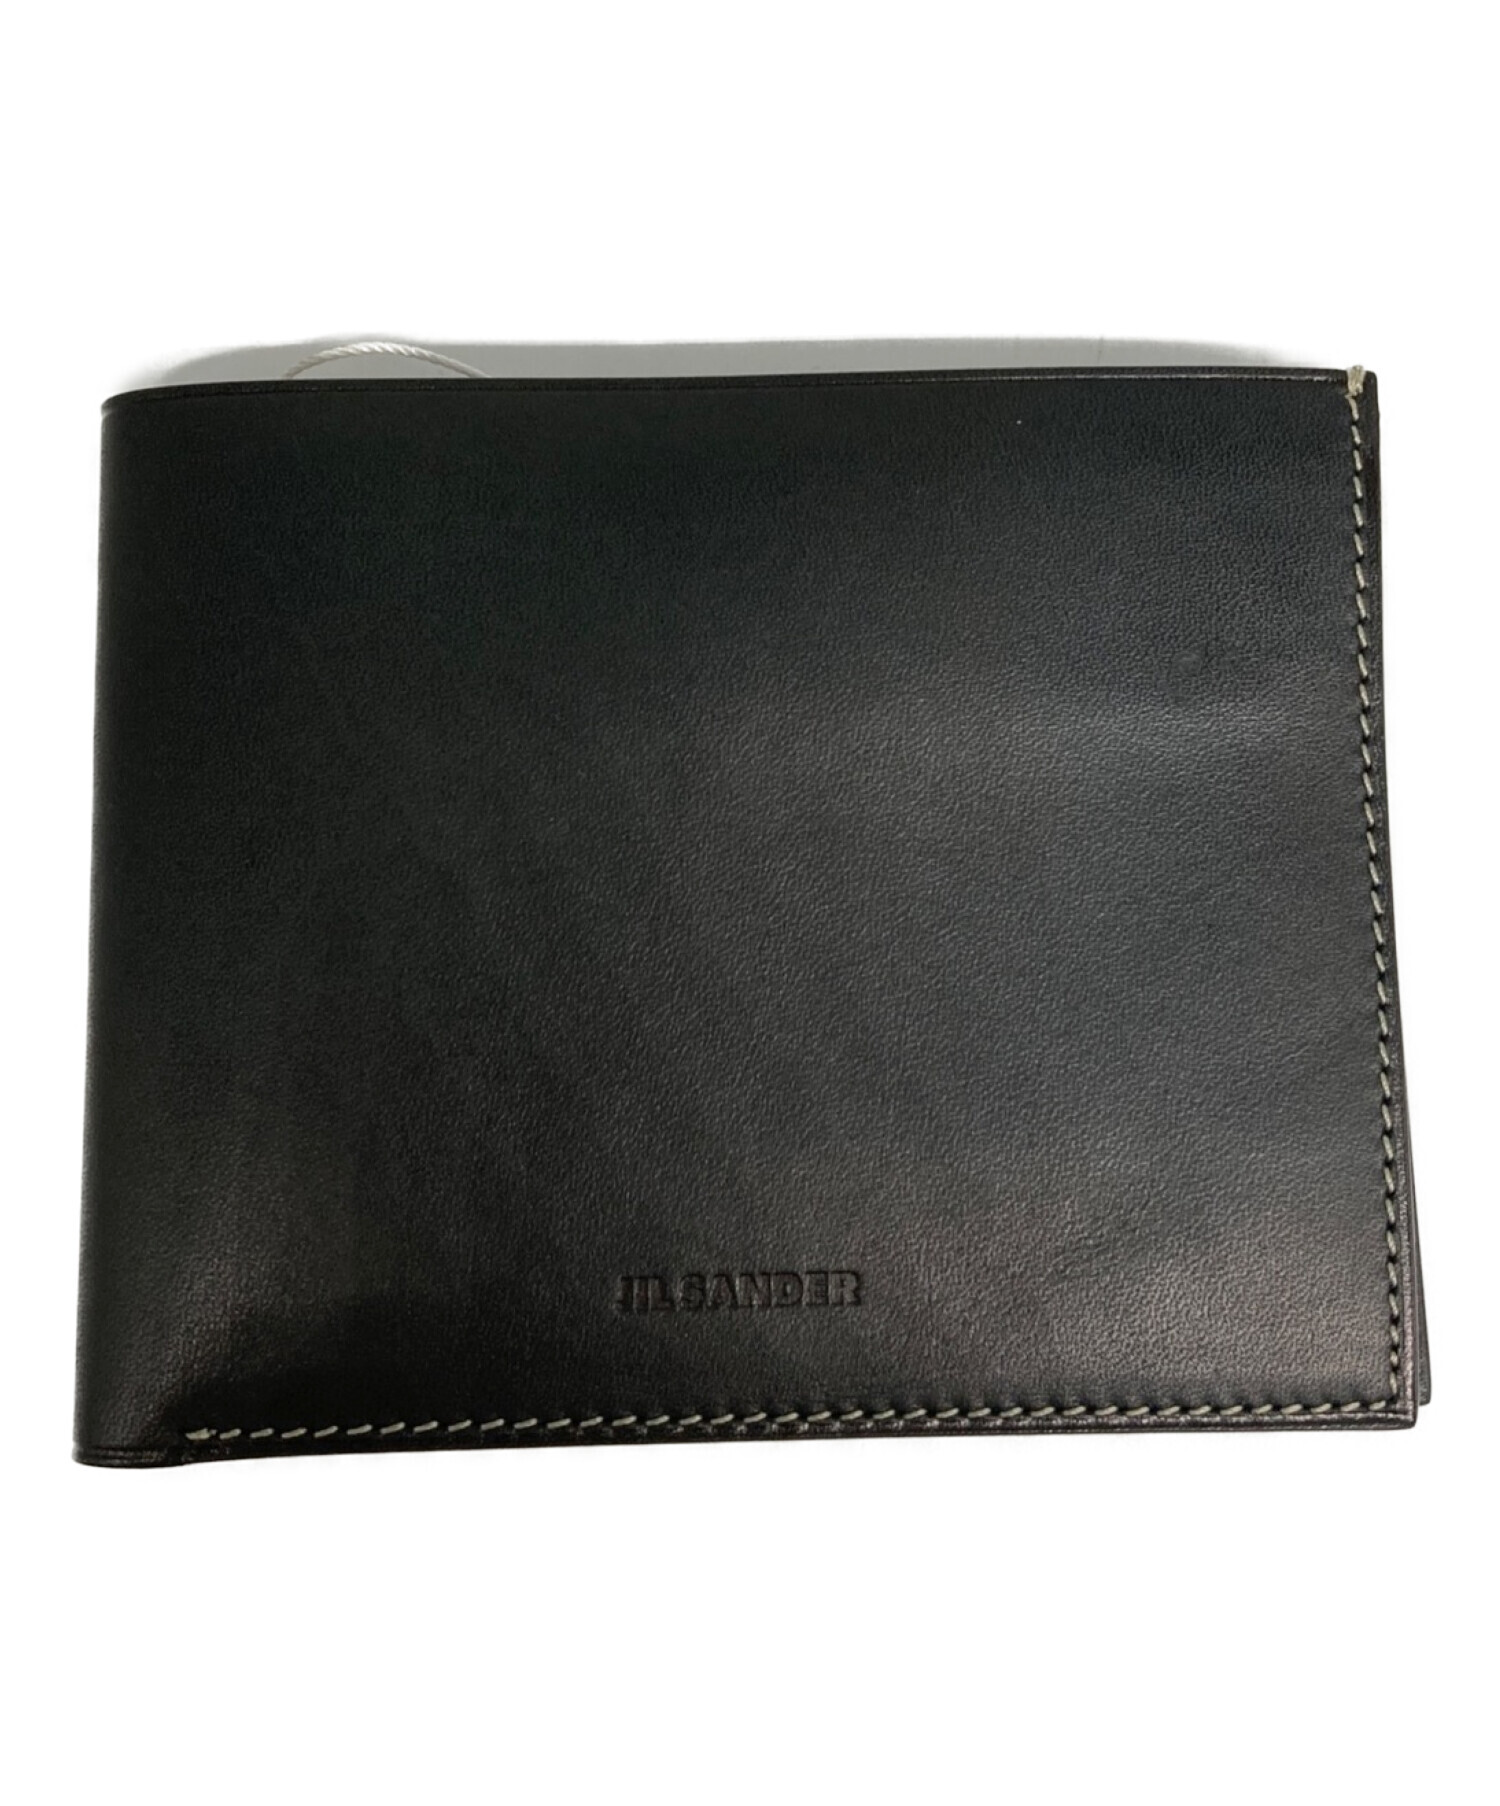 JILSANDER ジルサンダー 財布 2つ折り財布 ブラック 印象のデザイン - 小物